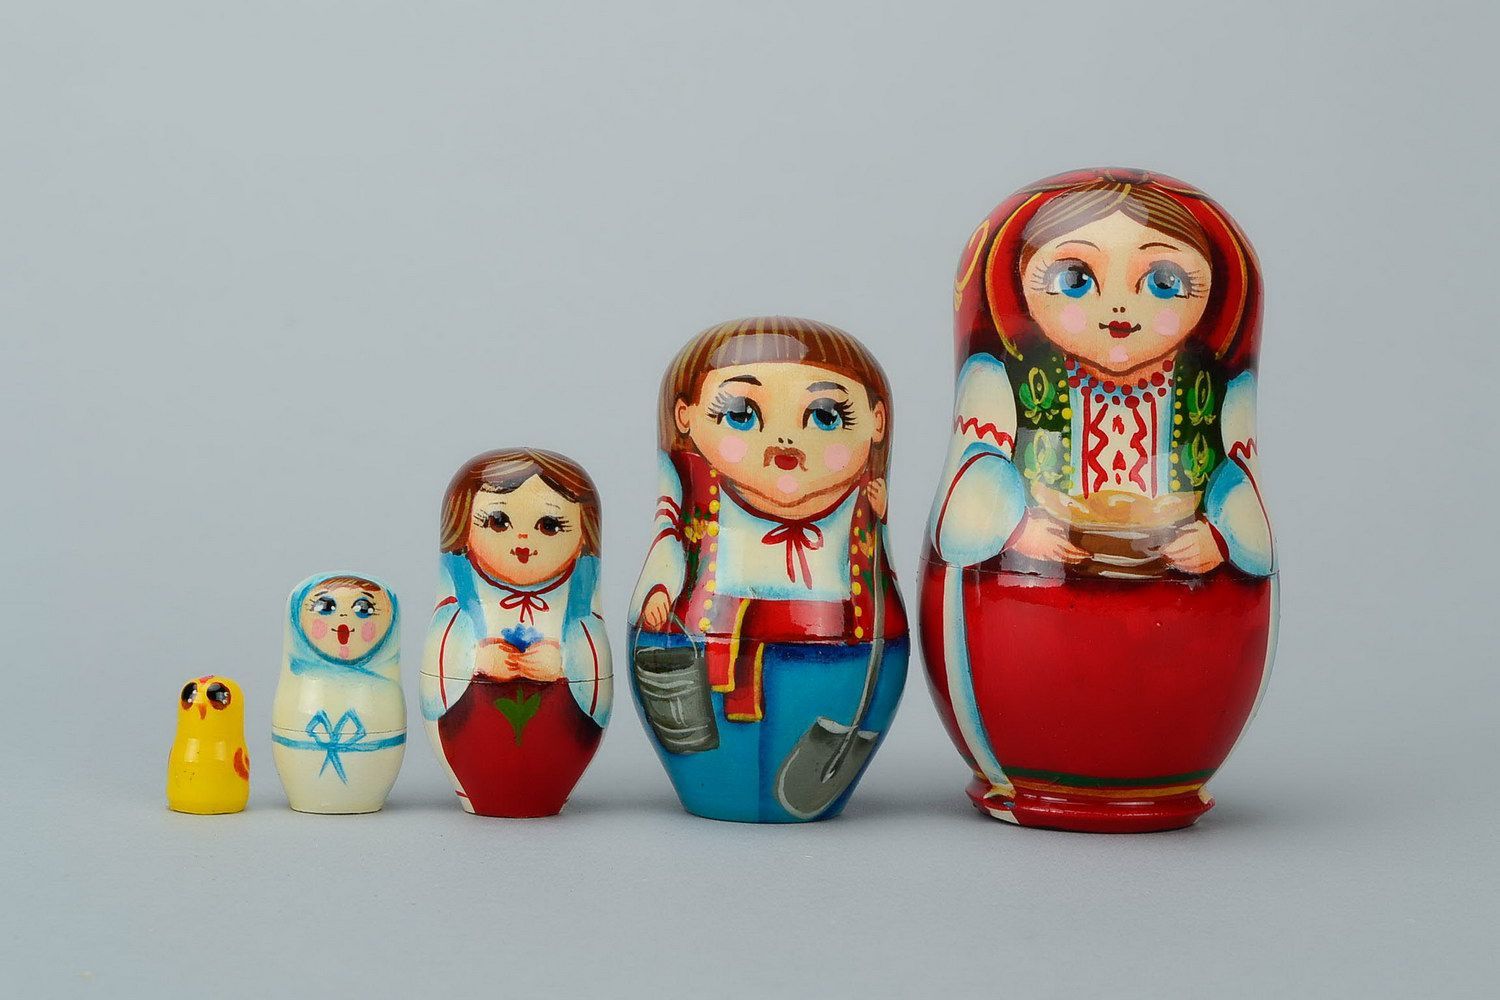 Matrioshka en una ropa nacional ucraniana con varéniki. Matrioshka es la muñeca de madera con vestido ruso campesino, que contiene otras de menor tamaño. Varéniki es una comida nacional de Ucrania
 foto 4